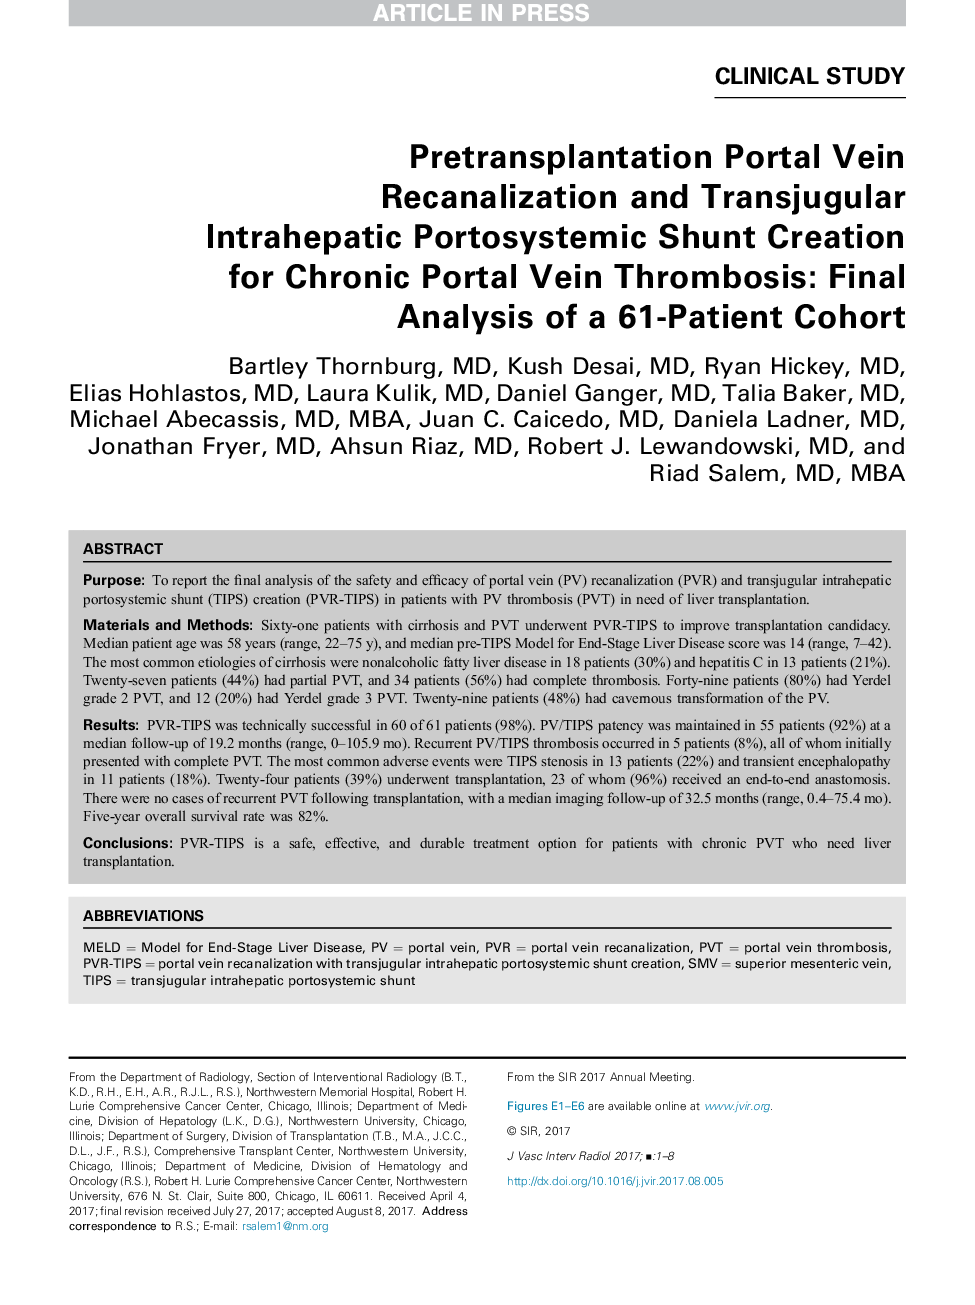 ترانسپالاسیون بازآرایی وین پورتال و ایجاد شنت پورتسیستیک داخل مغزی ترجوغول برای ترومبوز ورید مزمن: تجزیه و تحلیل نهایی یک هم گروه 61 بیمار 